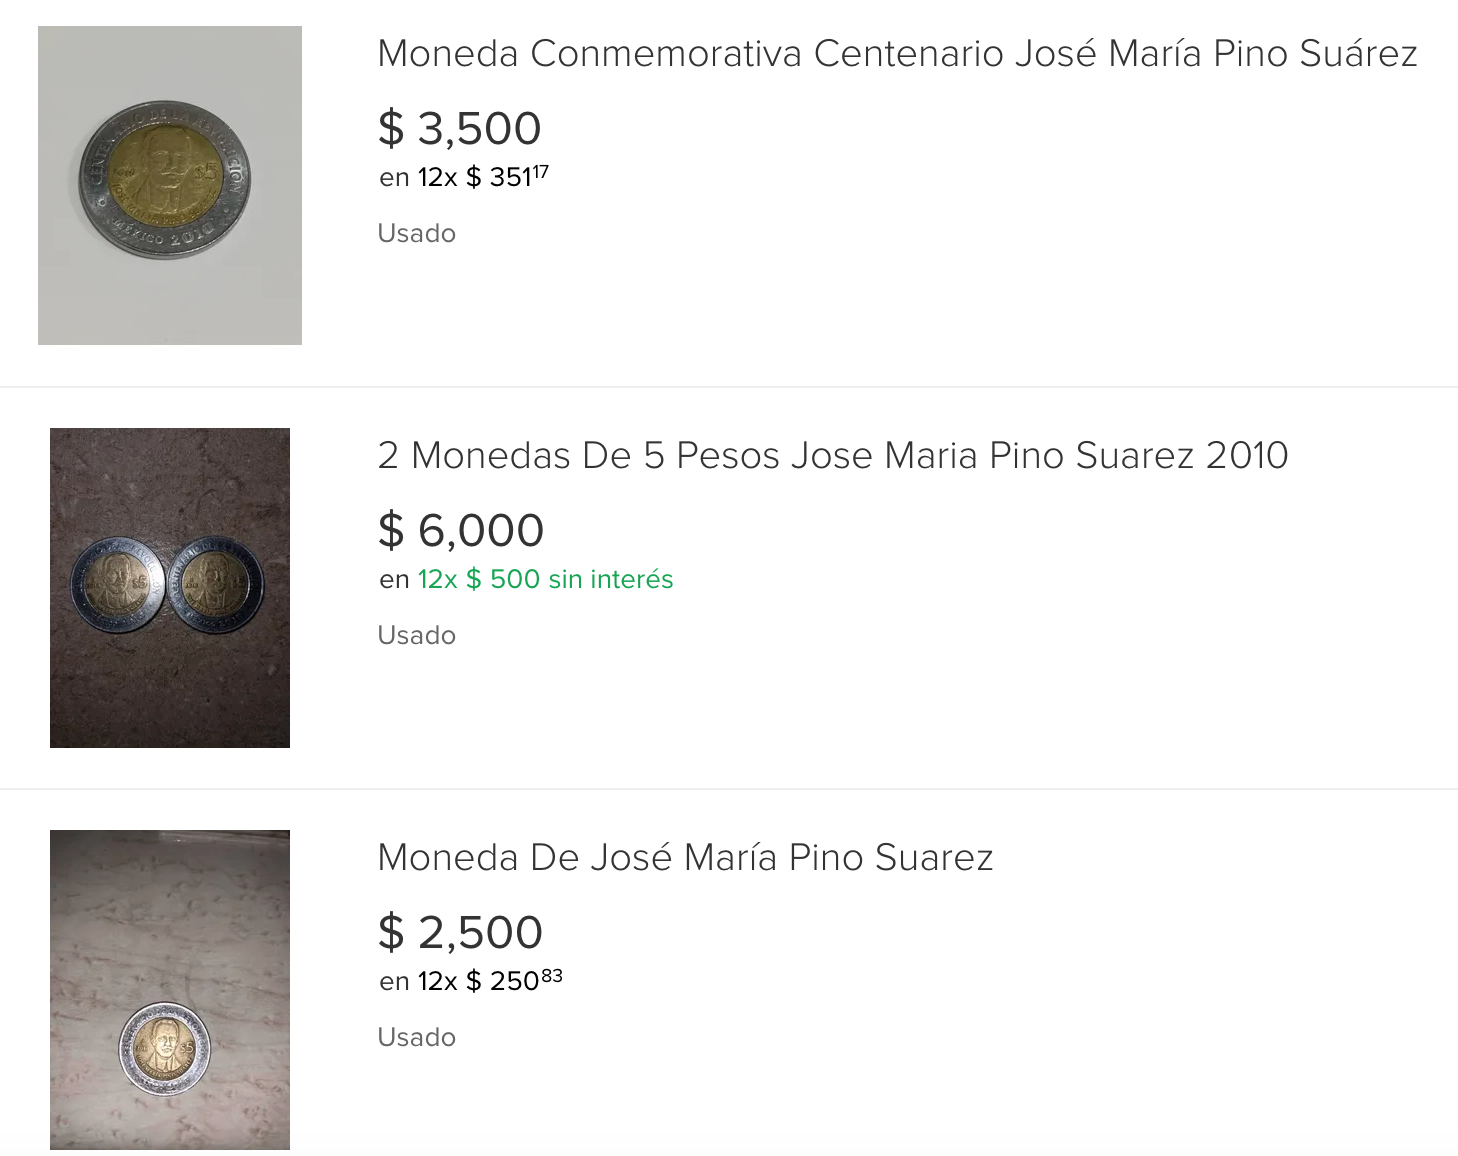 Revisen la morralla: Venden moneda conmemorativa de 5 pesos hasta en cinco mil 